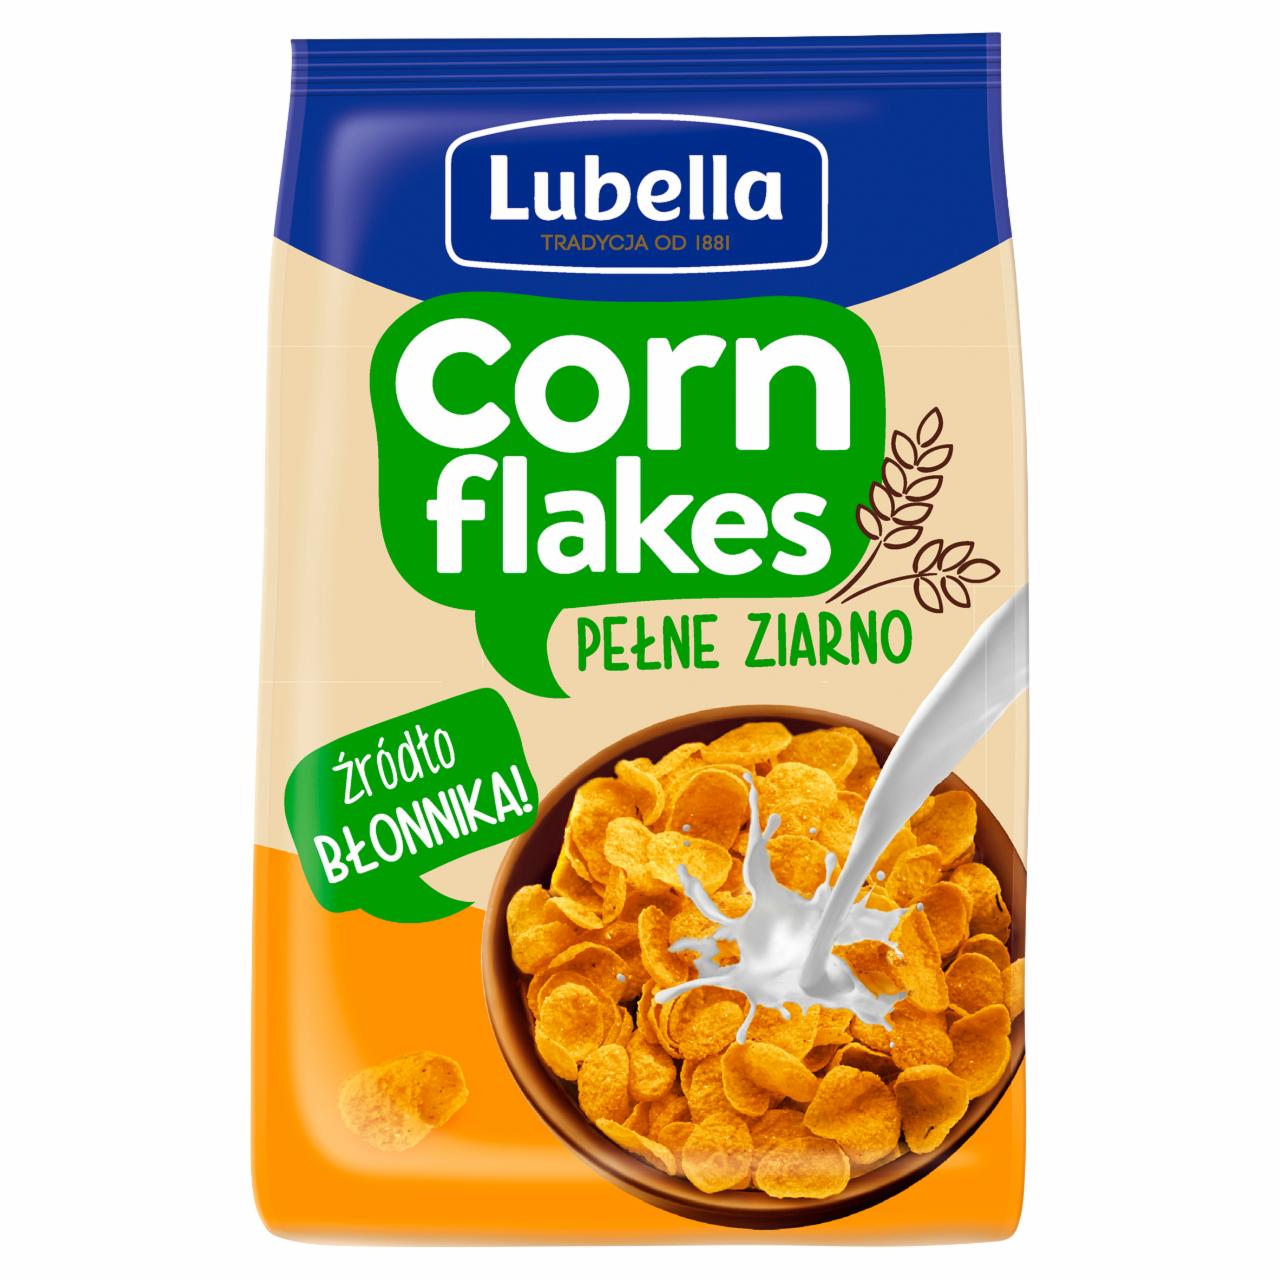 Zdjęcia - Lubella Corn Flakes Płatki kukurydziane pełne ziarno 250 g